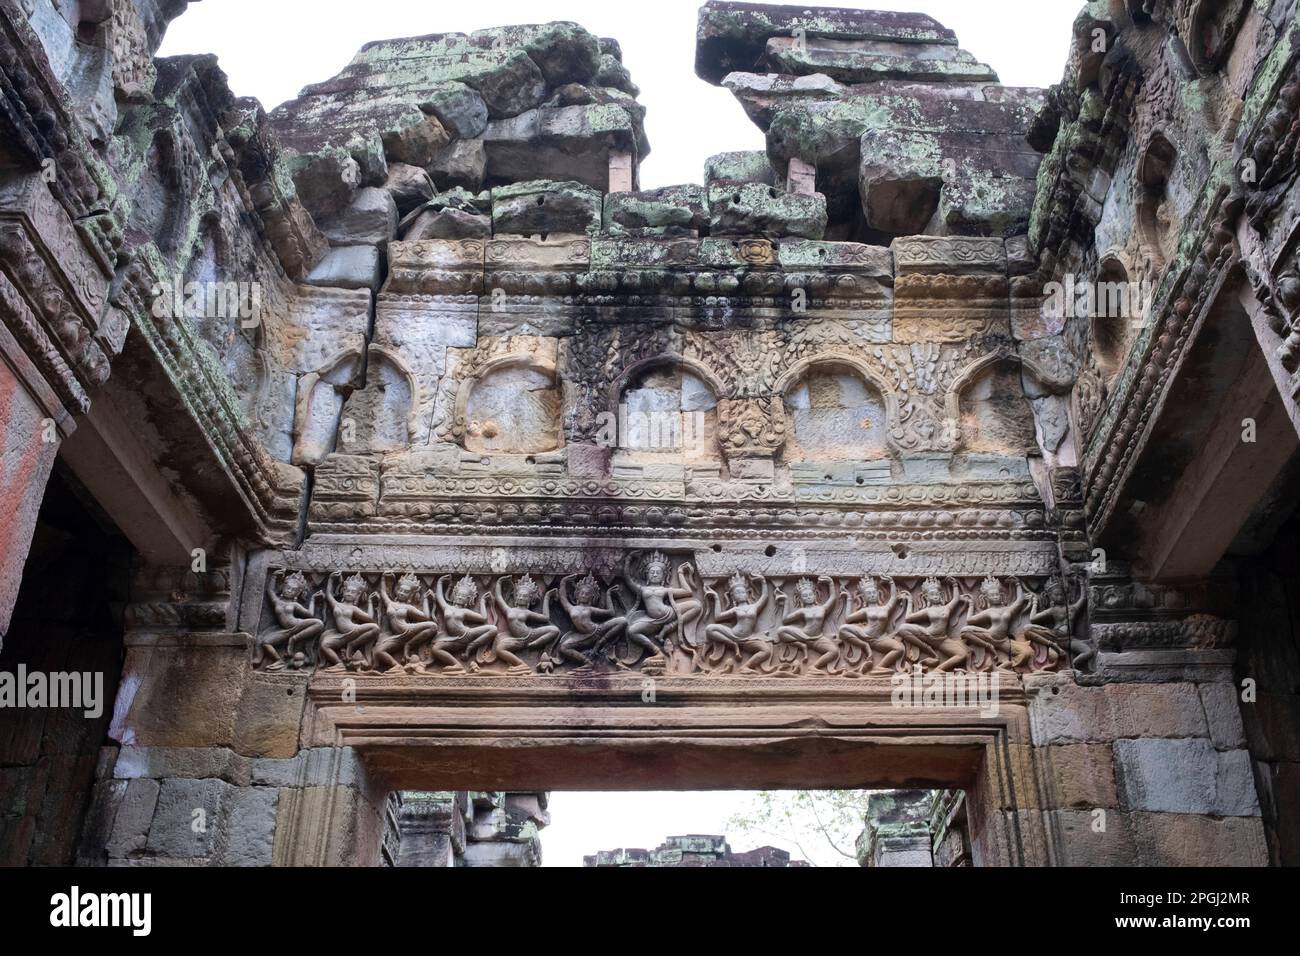 Cambodge: Salle des danseurs, Preah Khan (Temple de l'épée sacrée). Preah Khan a été construit à la fin du 12th siècle (1191) par Jayavarman VII et est situé juste au nord d'Angkor Thom. Le temple a été construit sur le site de la victoire de Jayavarman VII sur les Chams envahisseurs en 1191. Elle était le centre d'une organisation importante, avec près de 100 000 fonctionnaires et fonctionnaires. Il a servi comme une université bouddhiste à un moment donné. La déité primaire du temple est la boddhisatva Avalokiteshvara sous la forme du père de Jayavarman. Banque D'Images